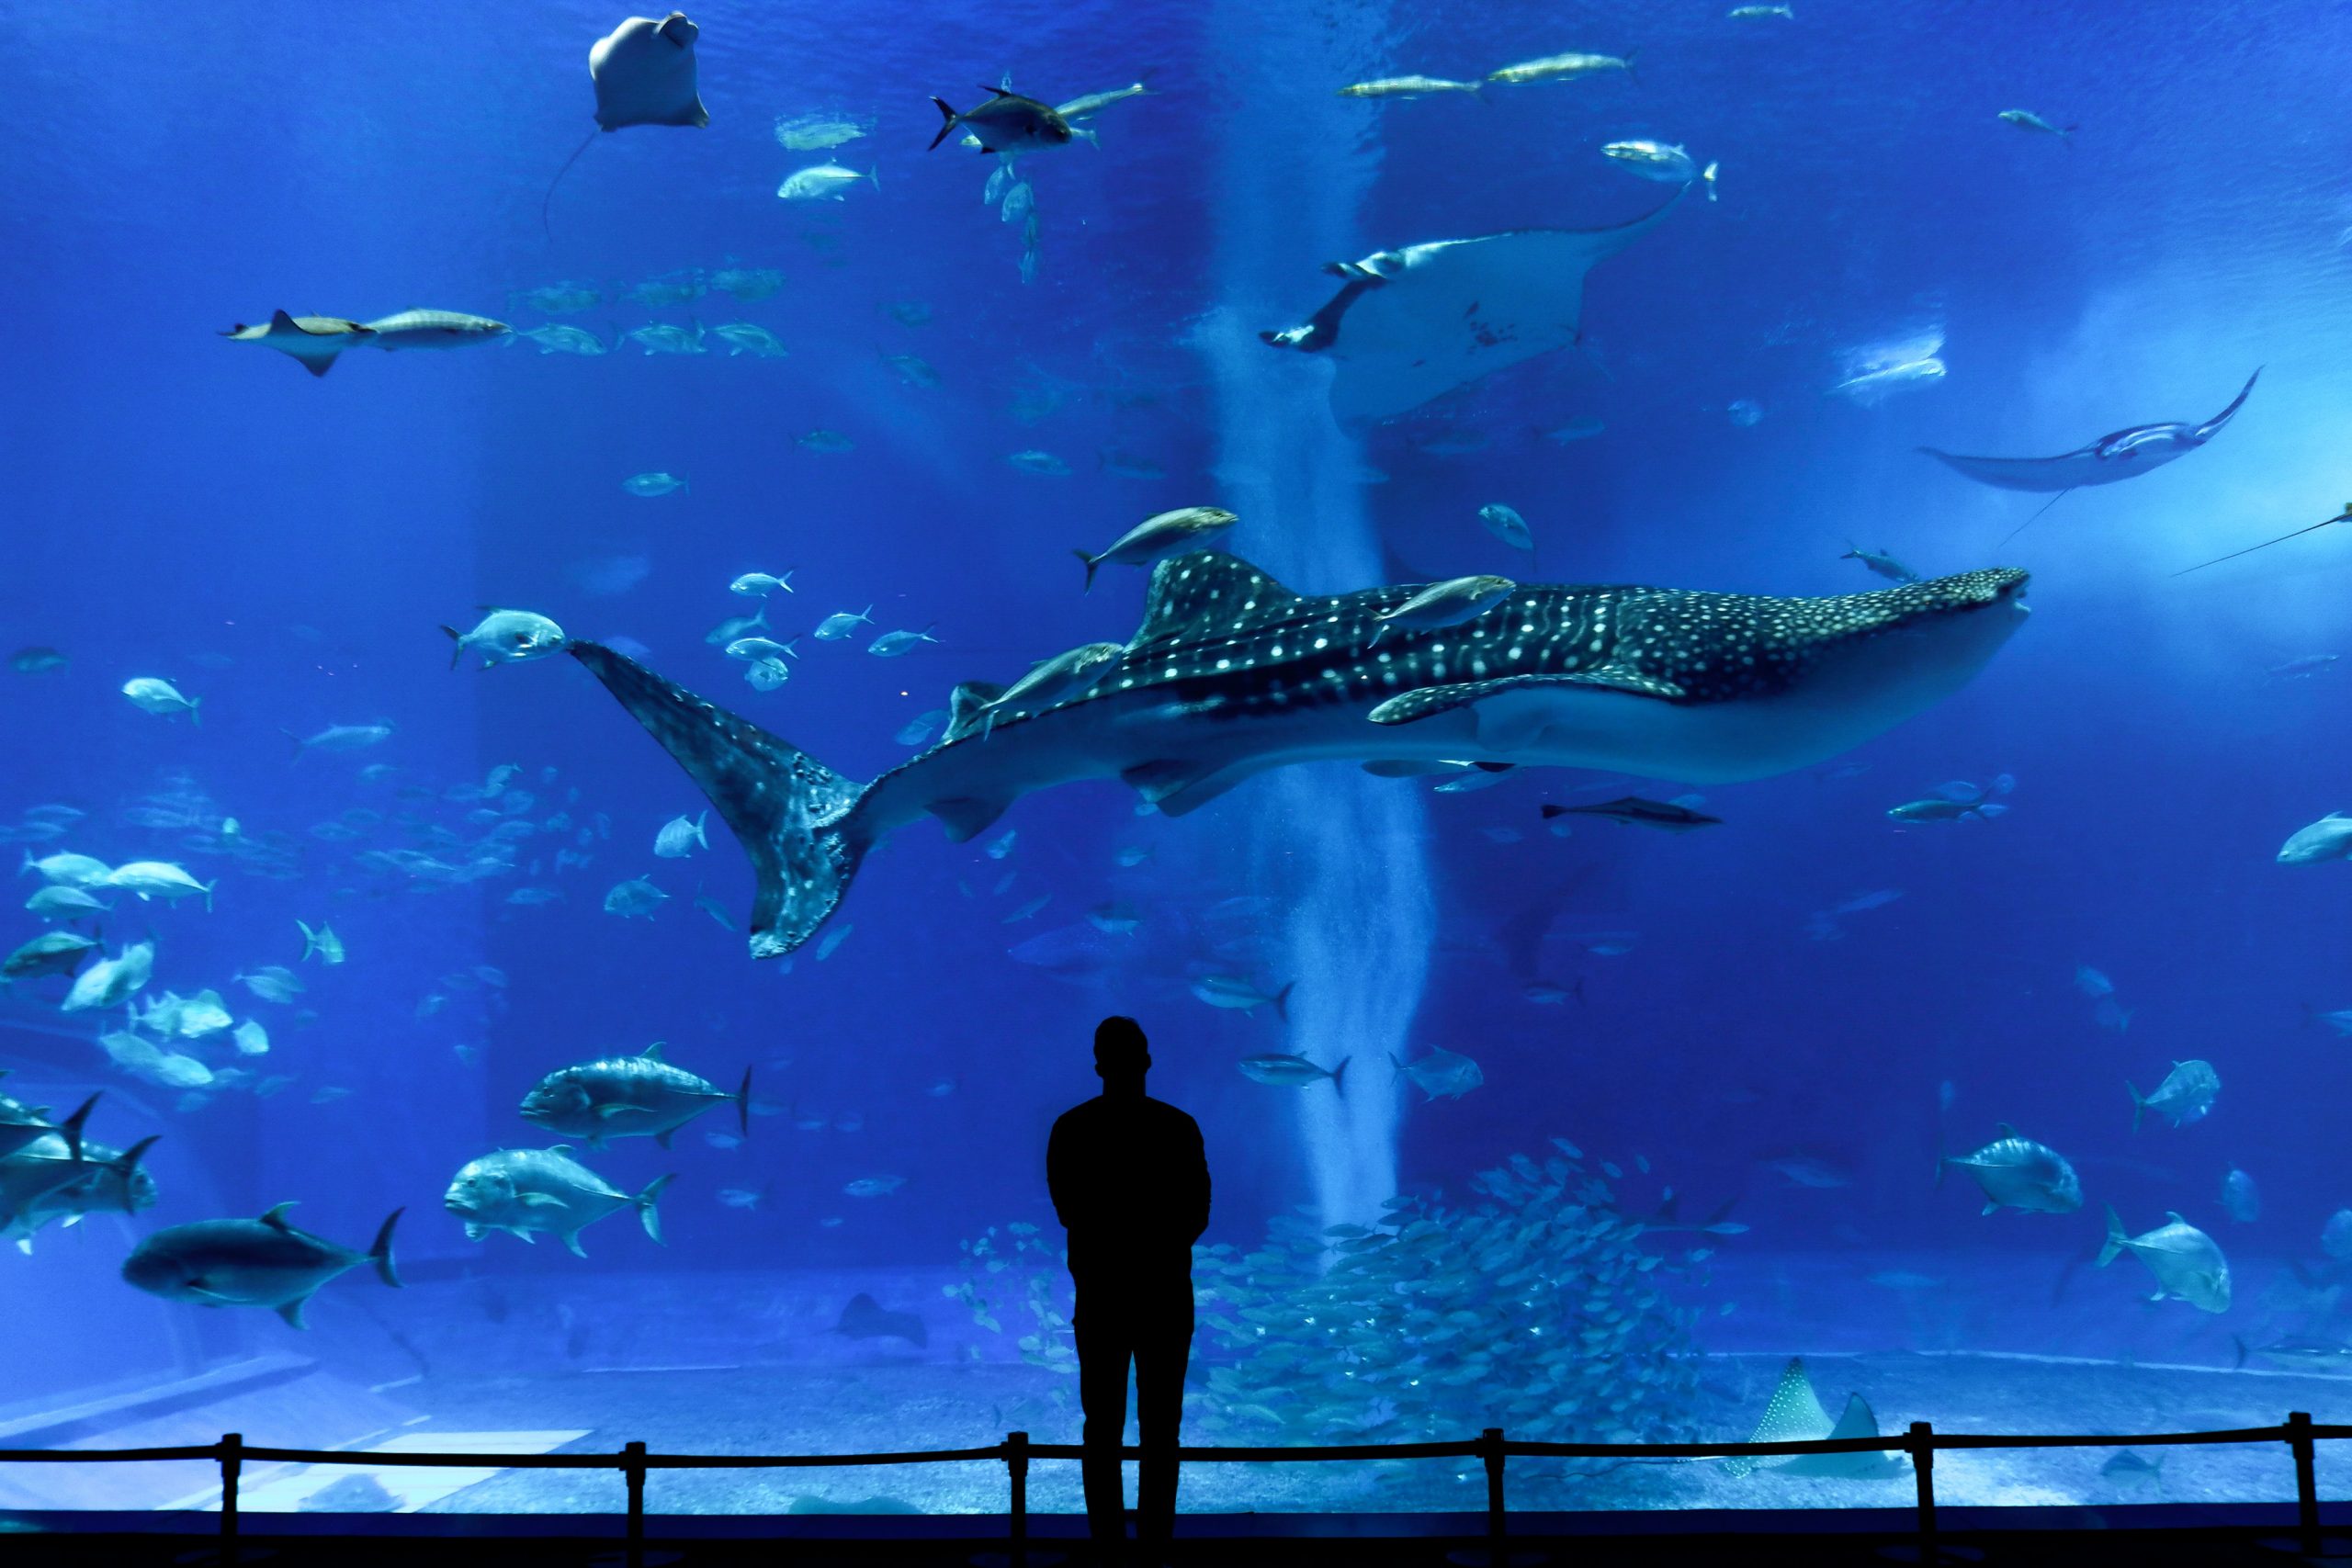 Motobu with its massive Okinawa Aquarium and its whale shark